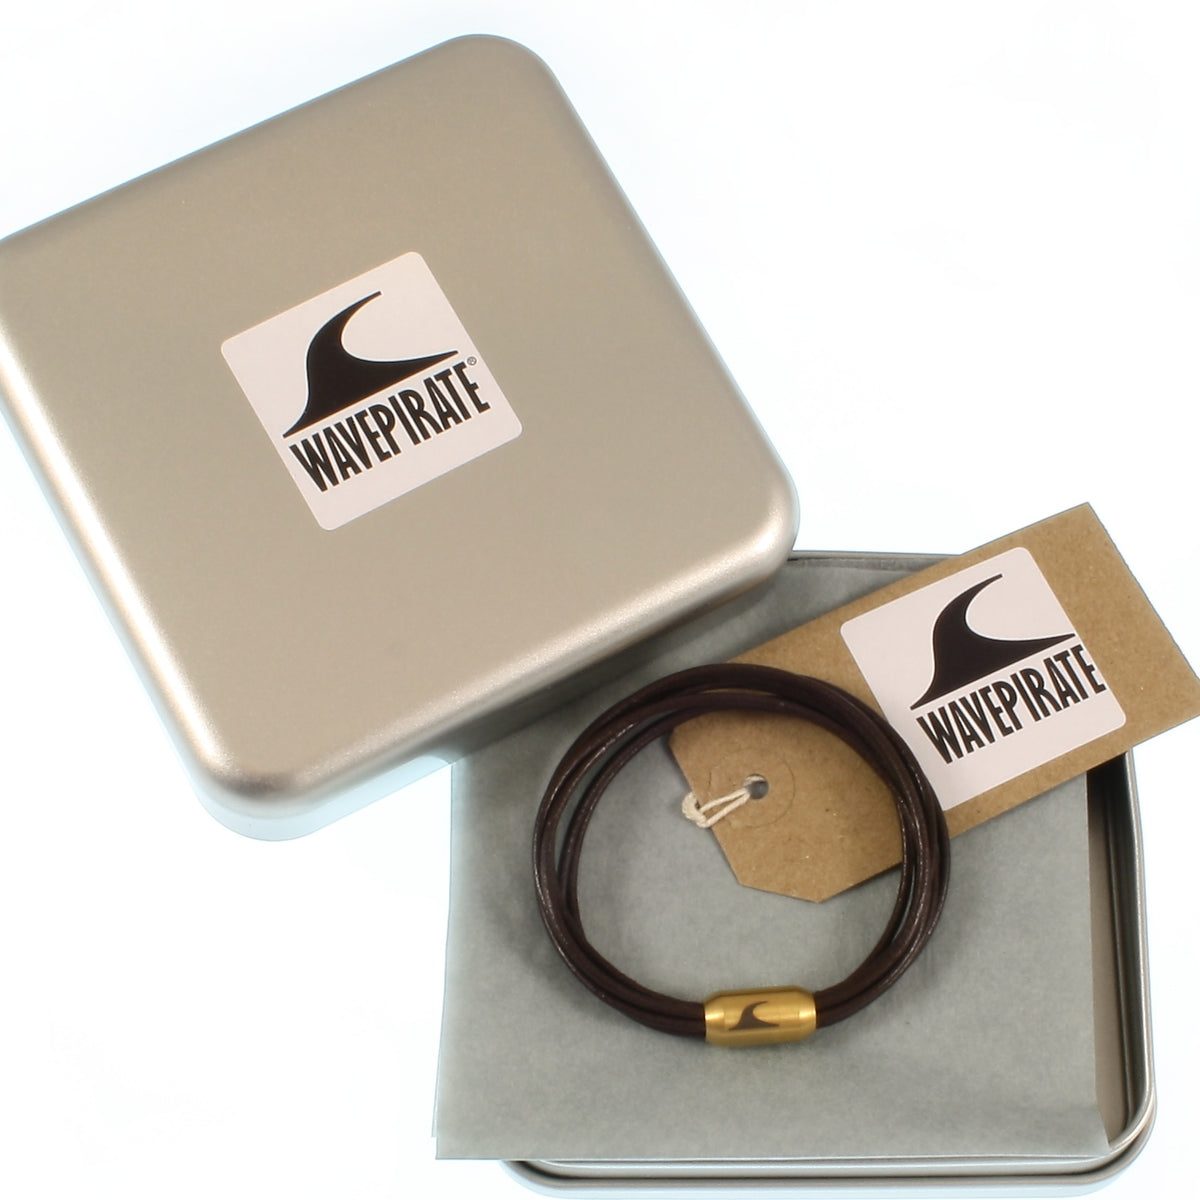 Damen-Leder-armband-fem-braun-gold-Edelstahlverschluss-geschenkverpackung-wavepirate-shop-r